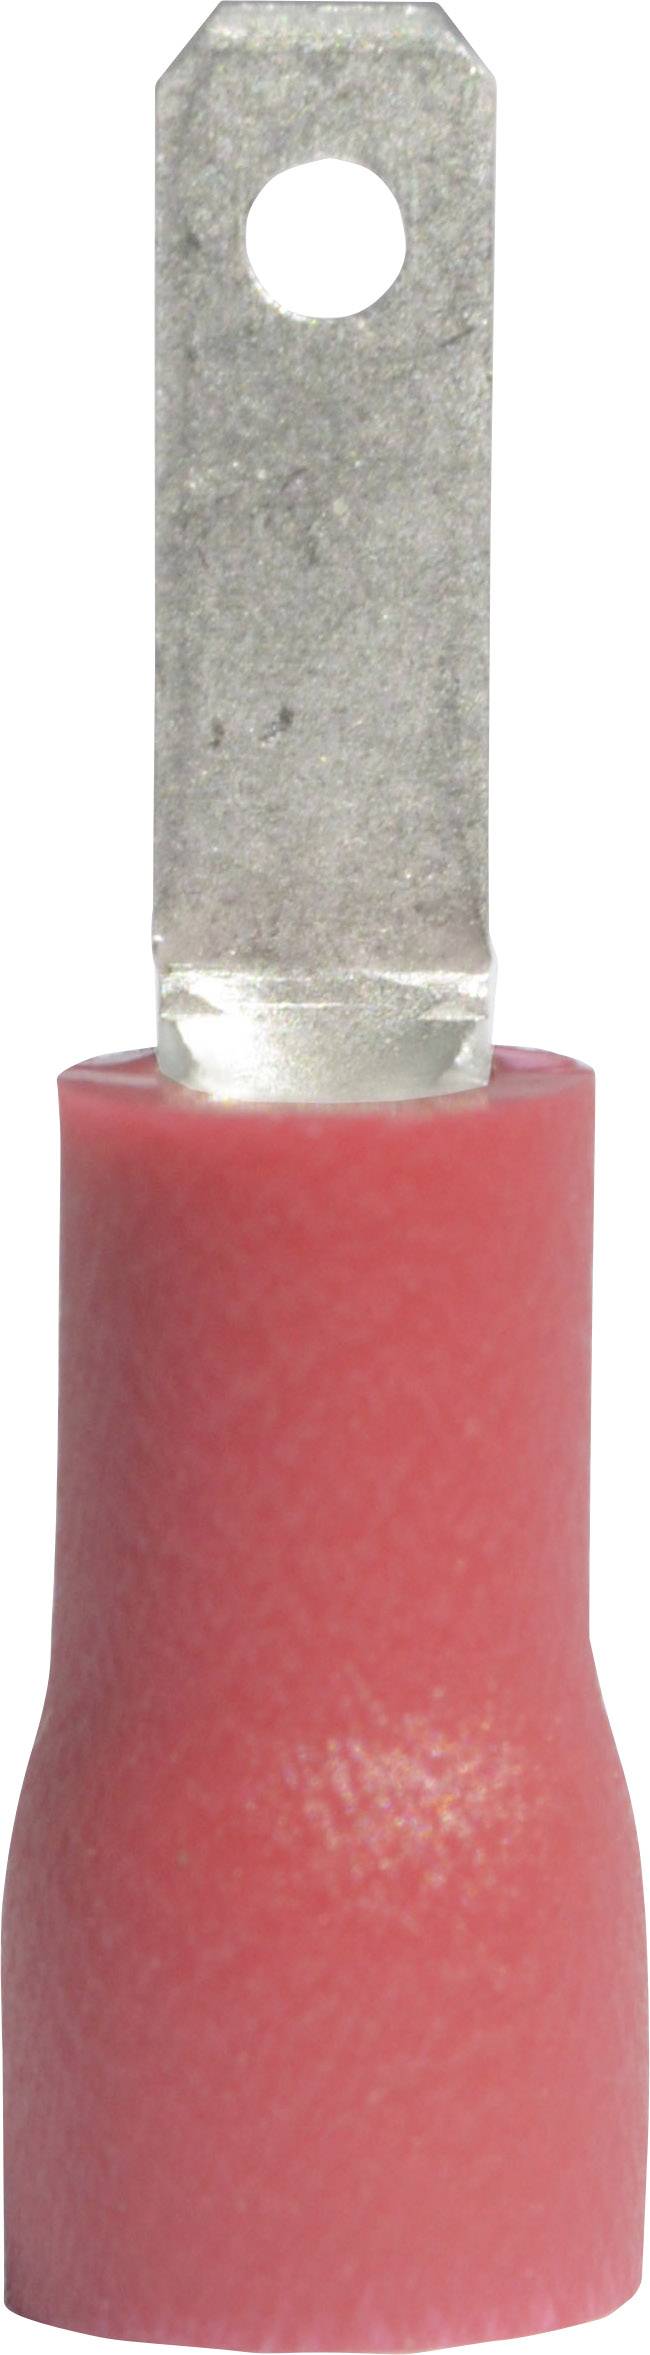 VOGT Flachstecker Steckbreite: 2.8 mm Steckdicke: 0.5 mm 180 ° Teilisoliert Rot Vogt Verbindungstech